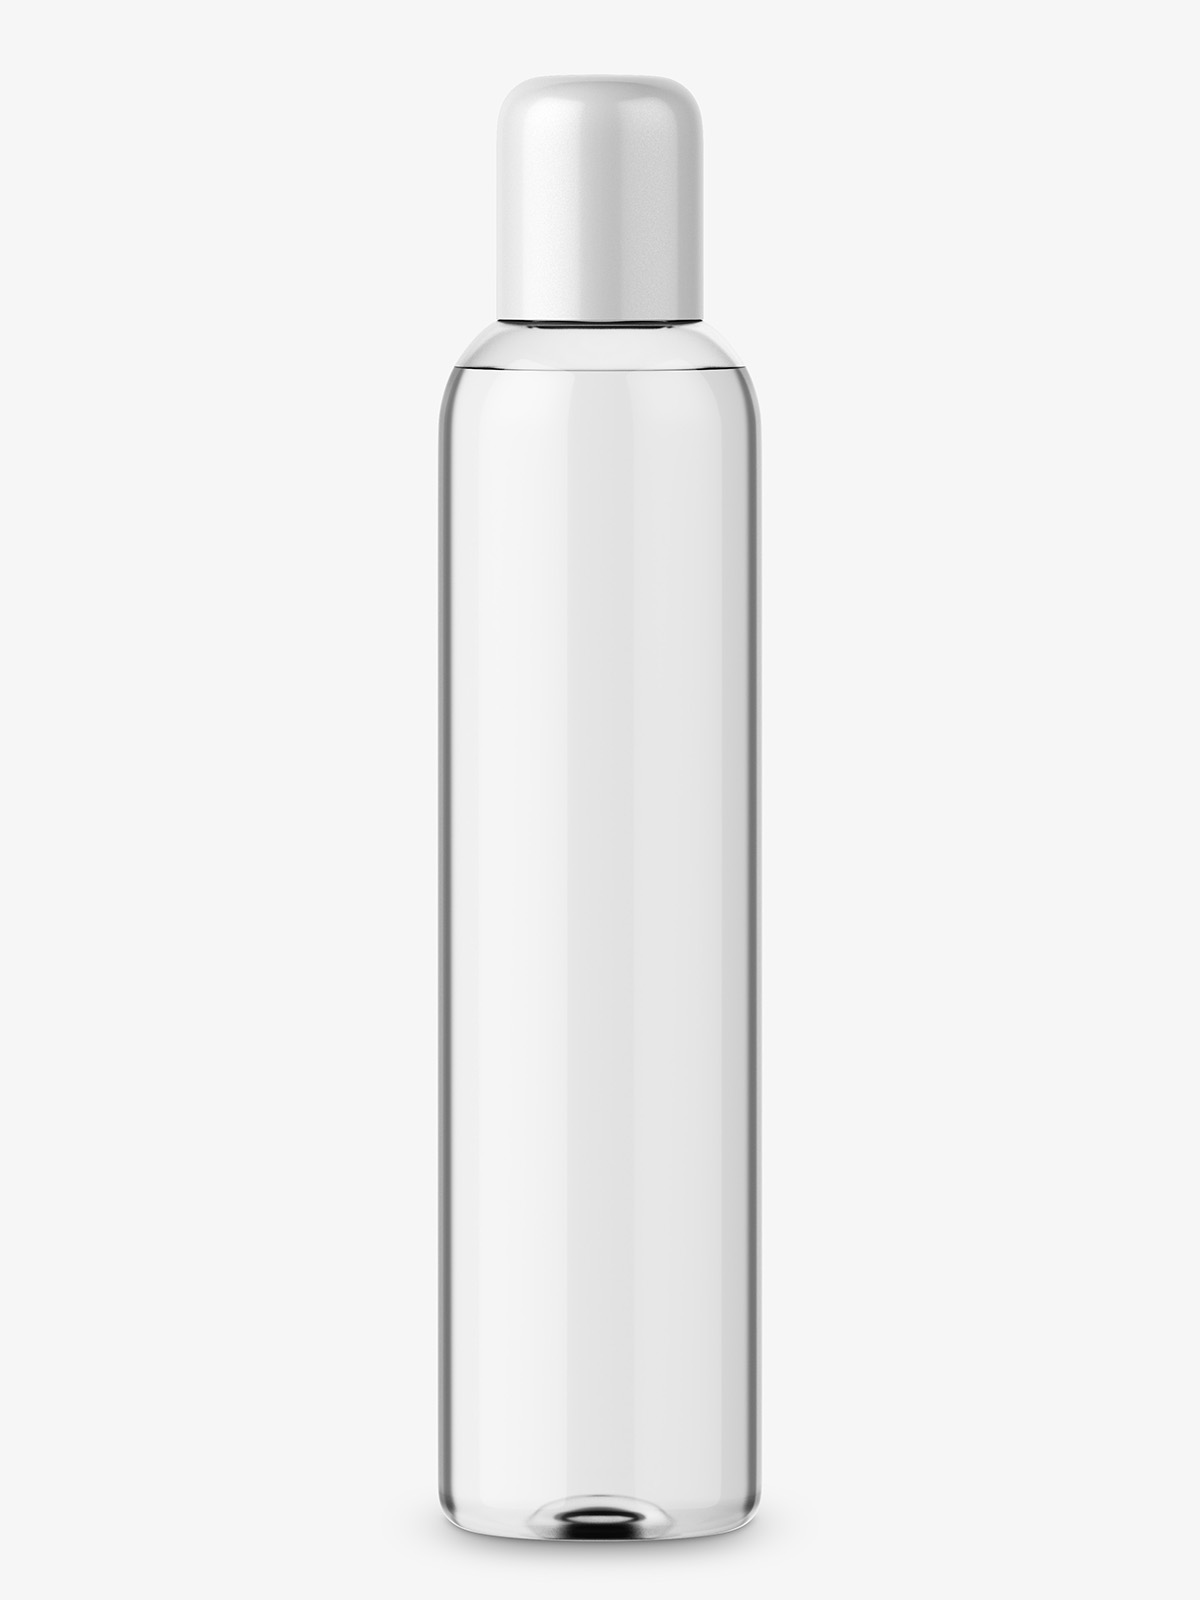 Transparent oil bottle mockup - Smarty Mockups